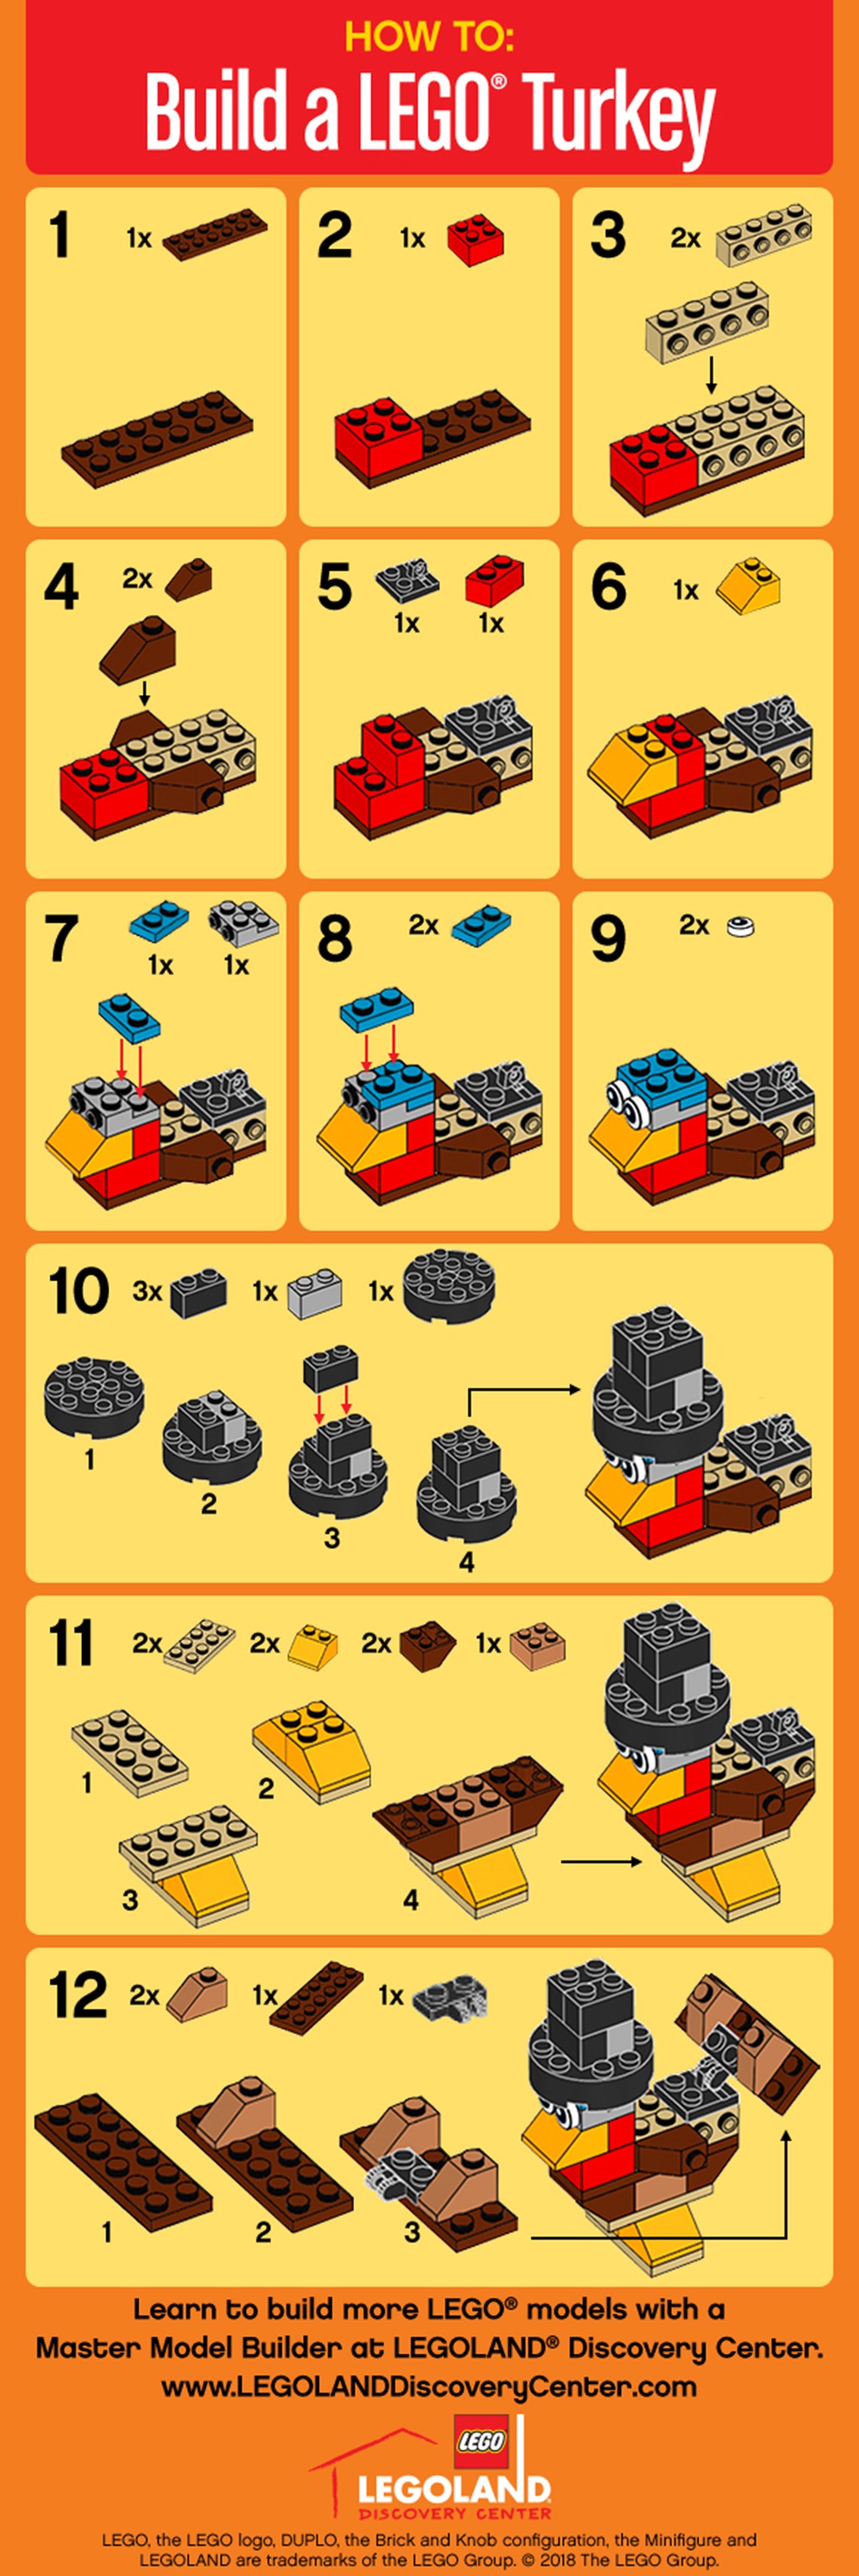 Build A LEGO Turkey | LEGOLAND Discovery Center Chicago